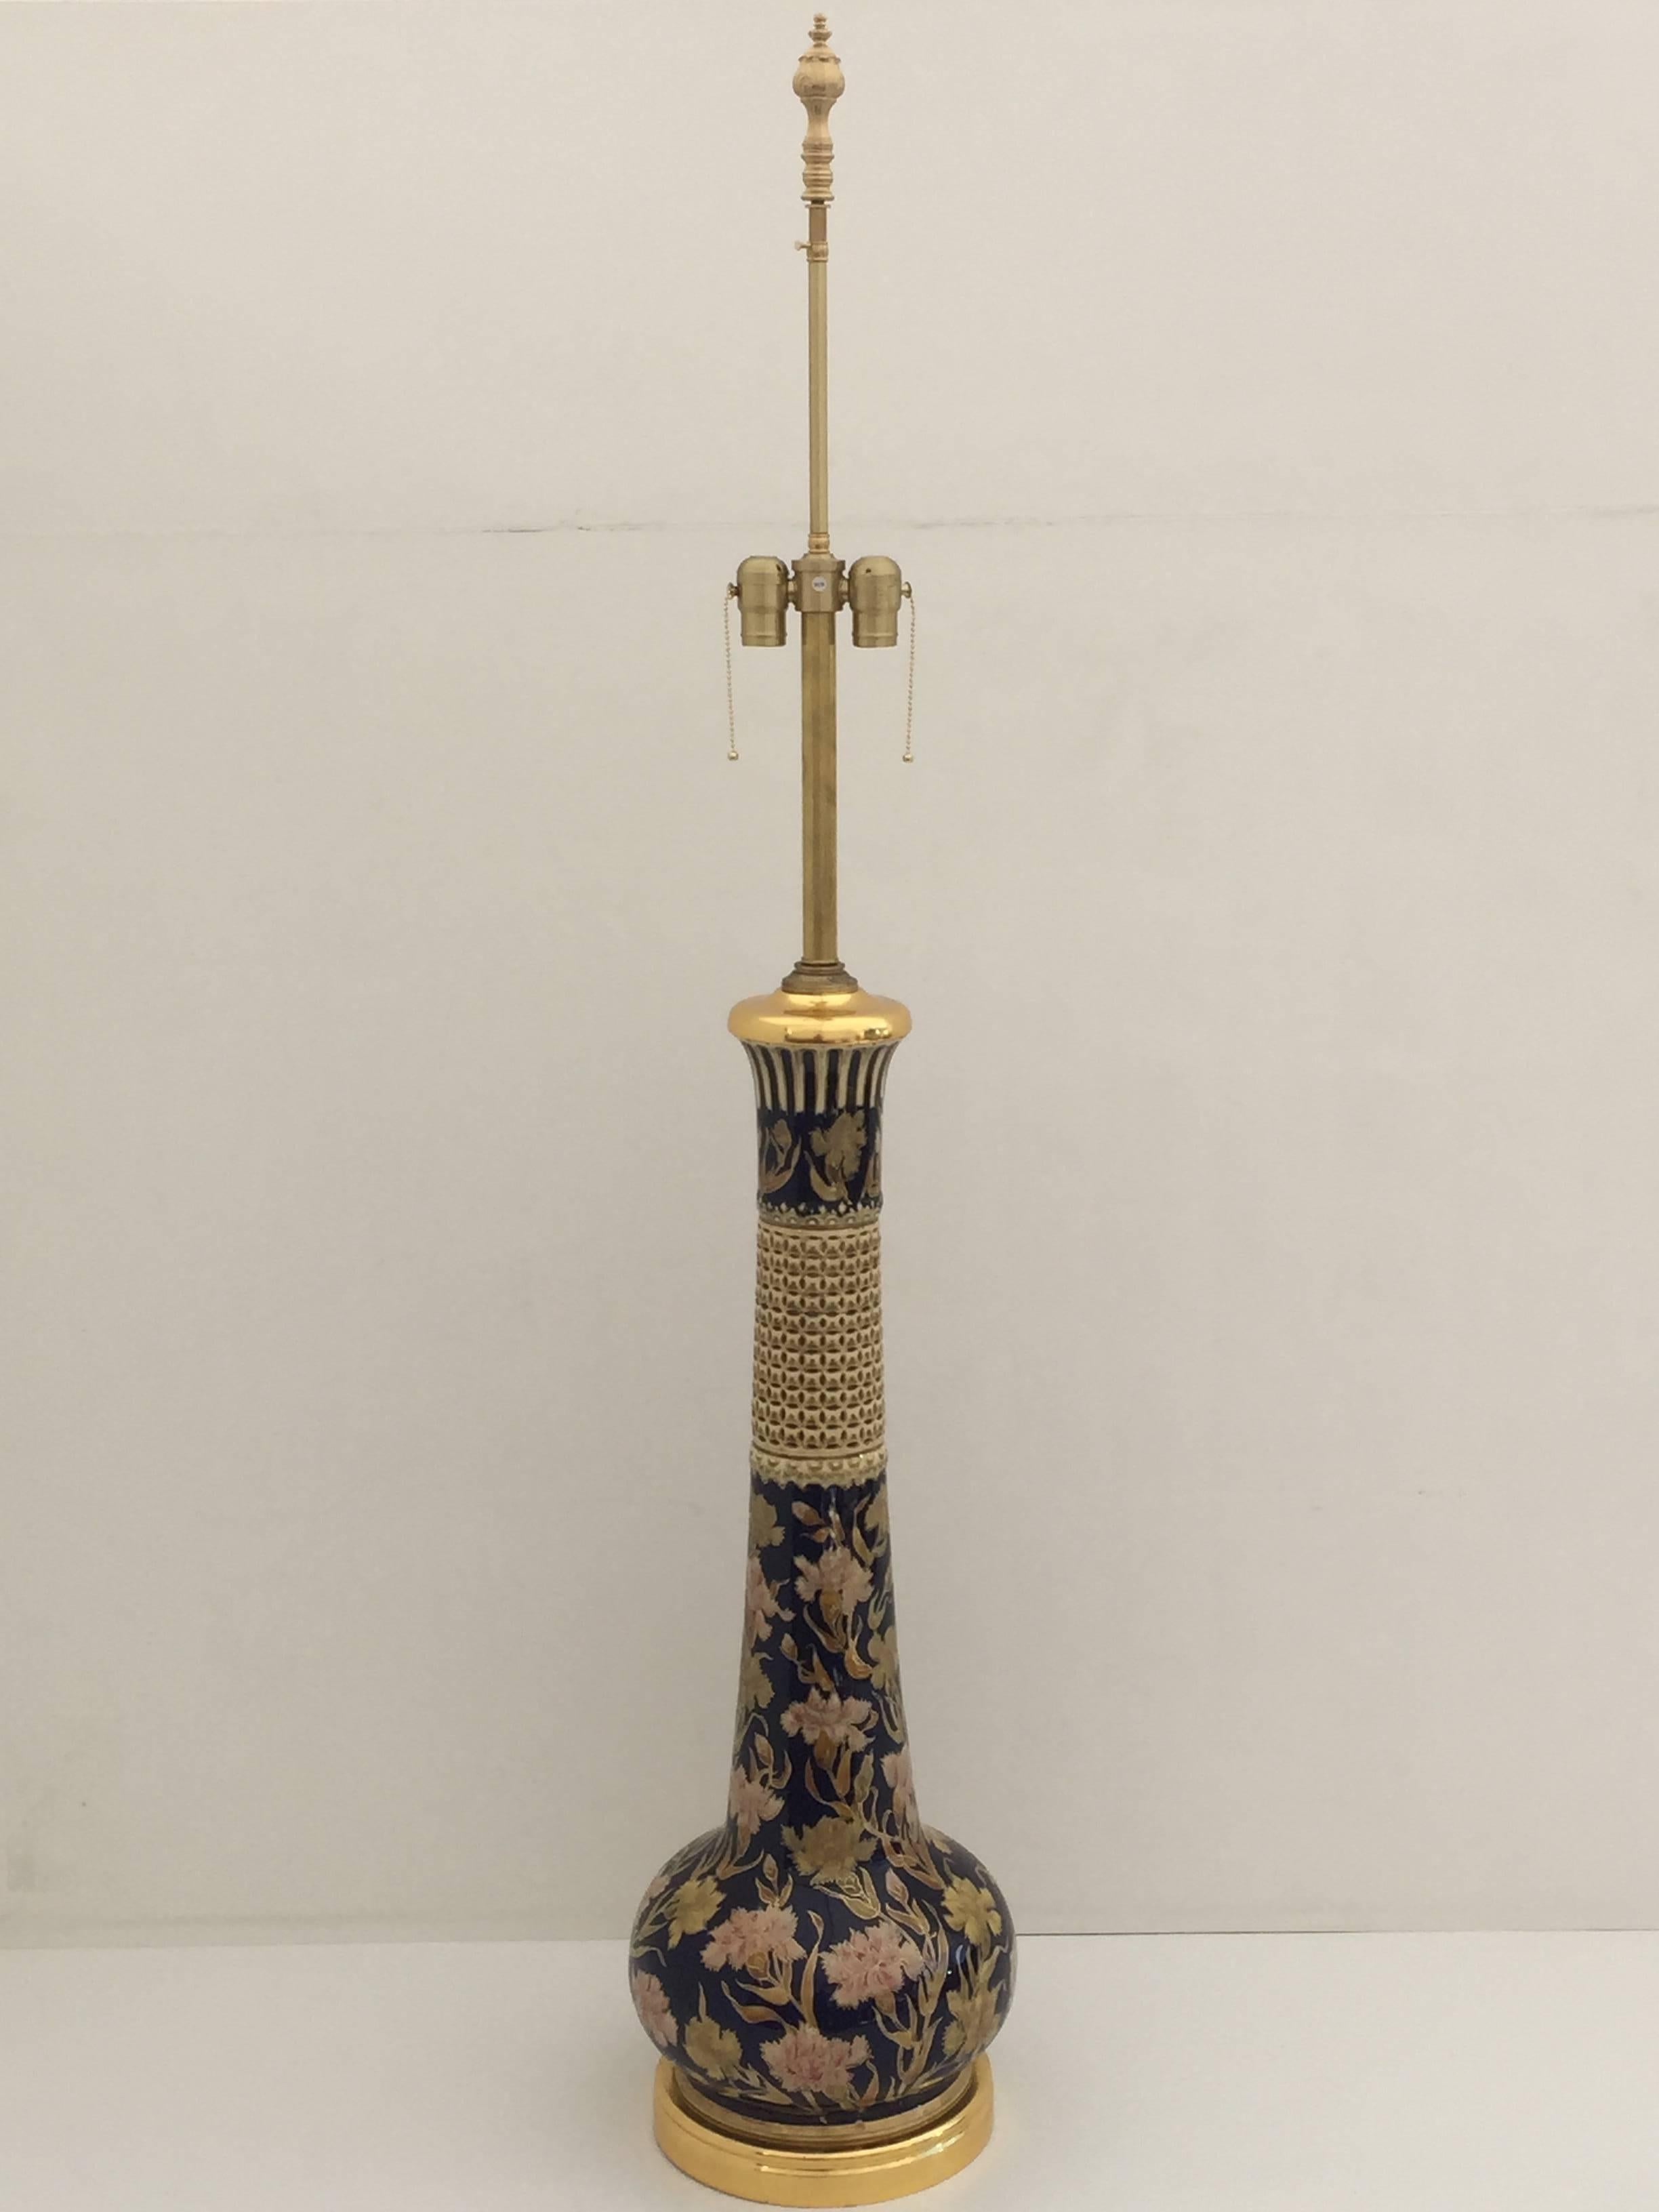 Lampe géante en céramique et feuilles d'or 24 carats avec un motif floral islamique.
La pièce en céramique elle-même mesure 32